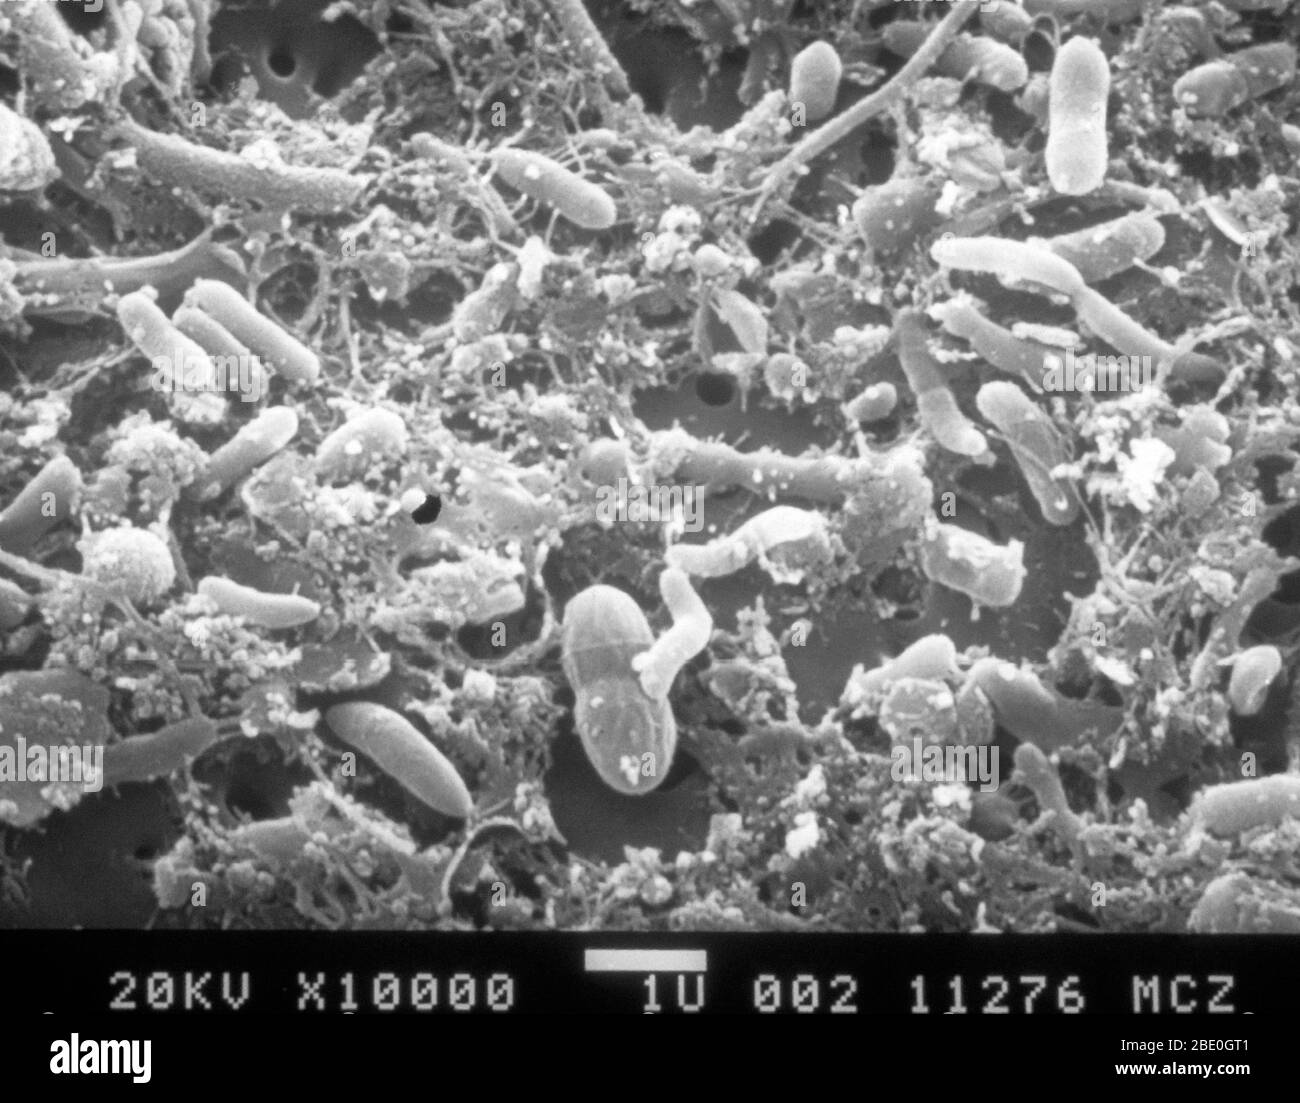 Exploración de micrografía electrónica (SEM) de aguas residuales sin procesar filtradas en una membrana de nucleóforos. Observe las bacterias incrustadas en material orgánico. Aumento 100,000x a un tamaño de imagen de 35 mm. Foto de stock